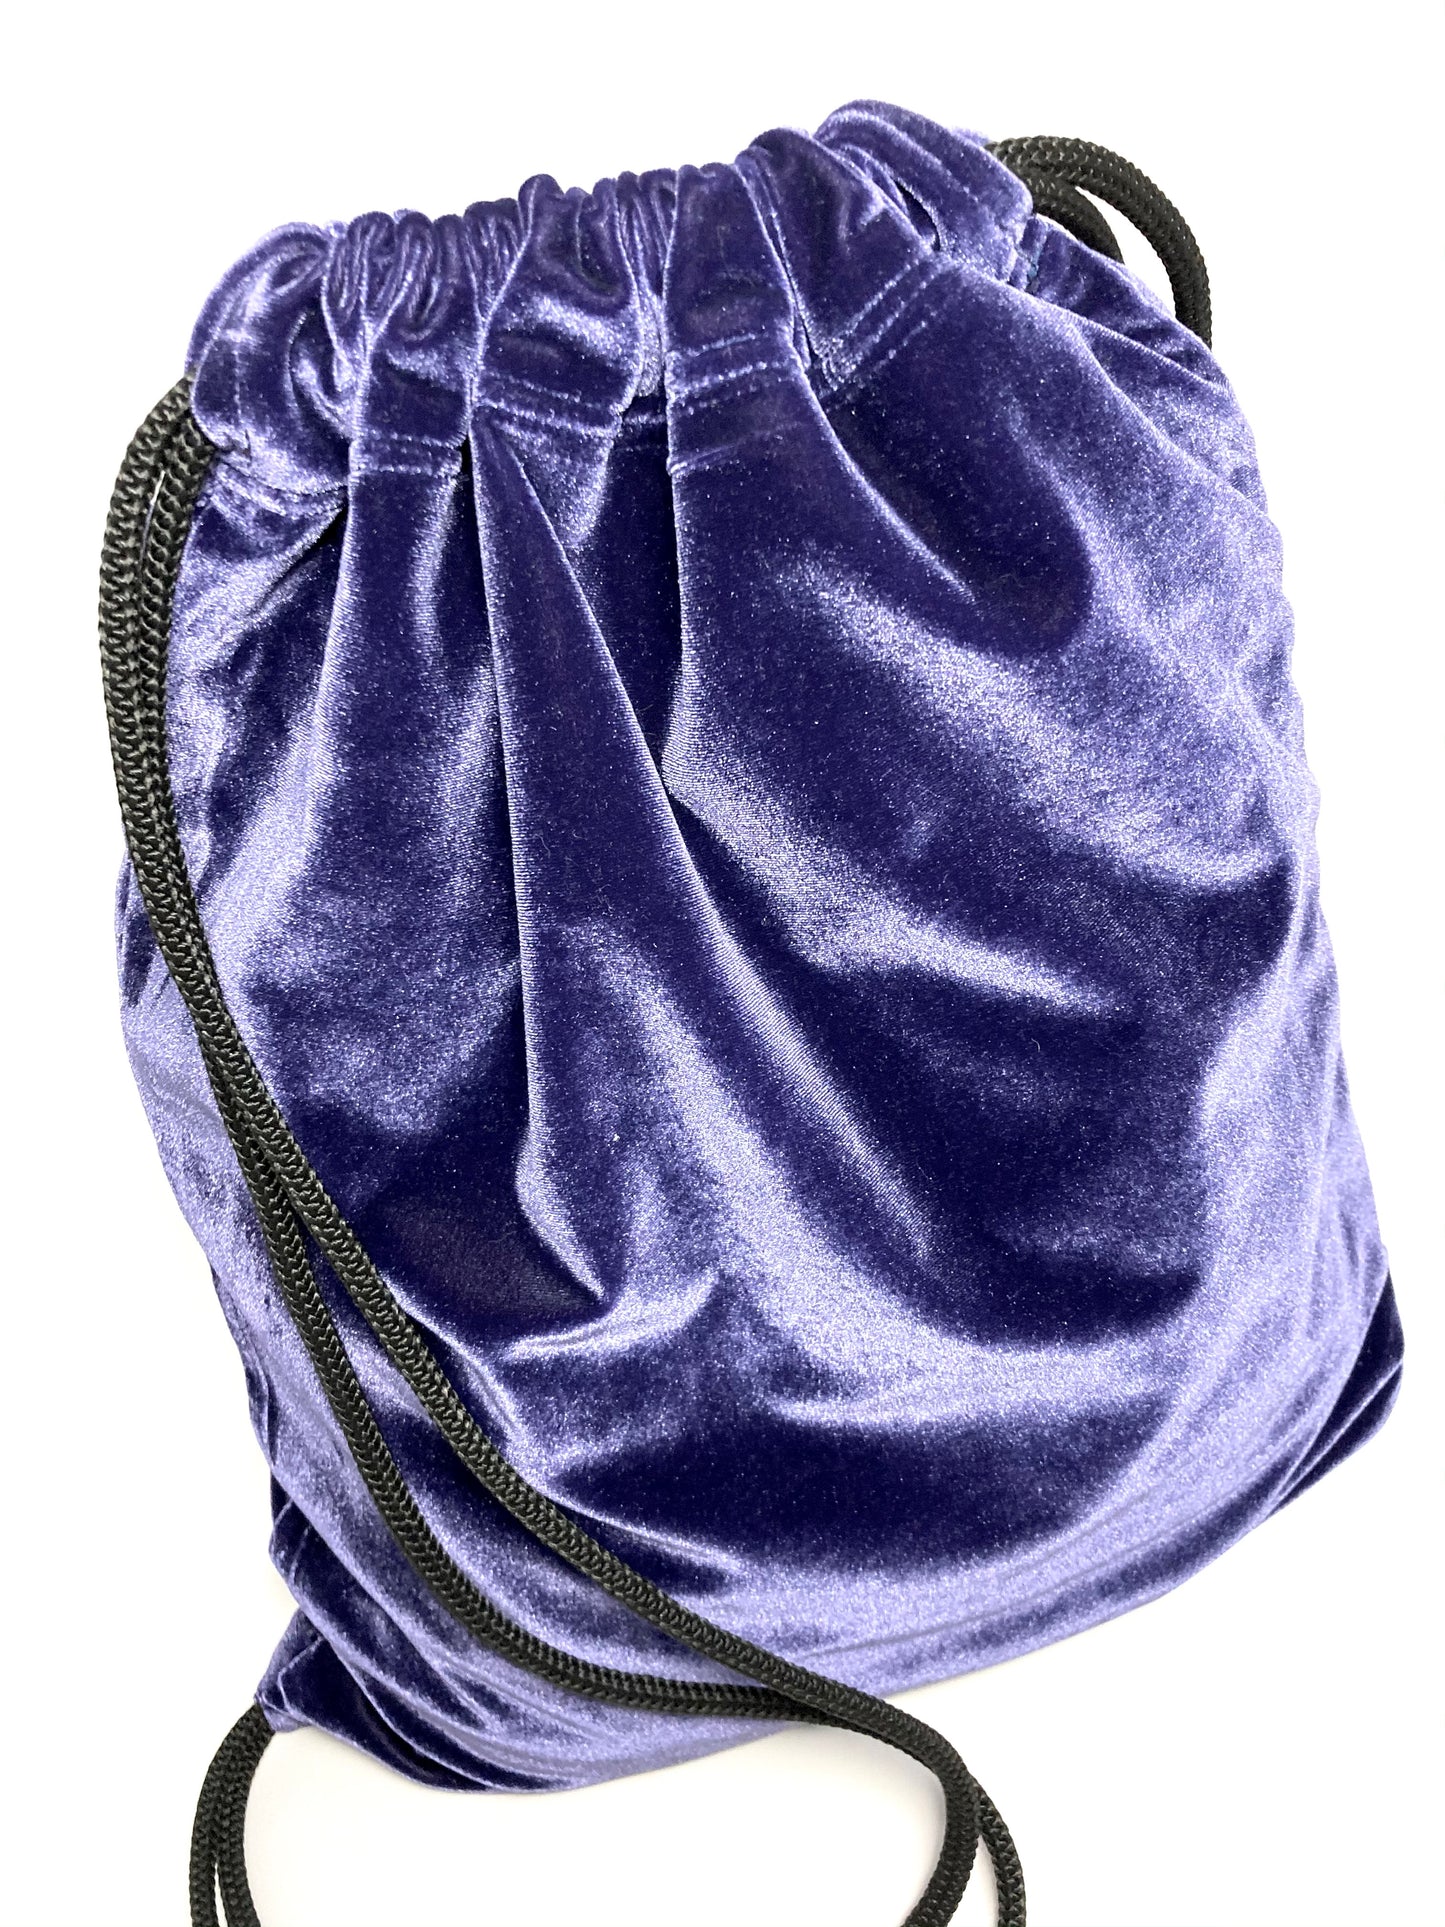 Purple velvet backpack